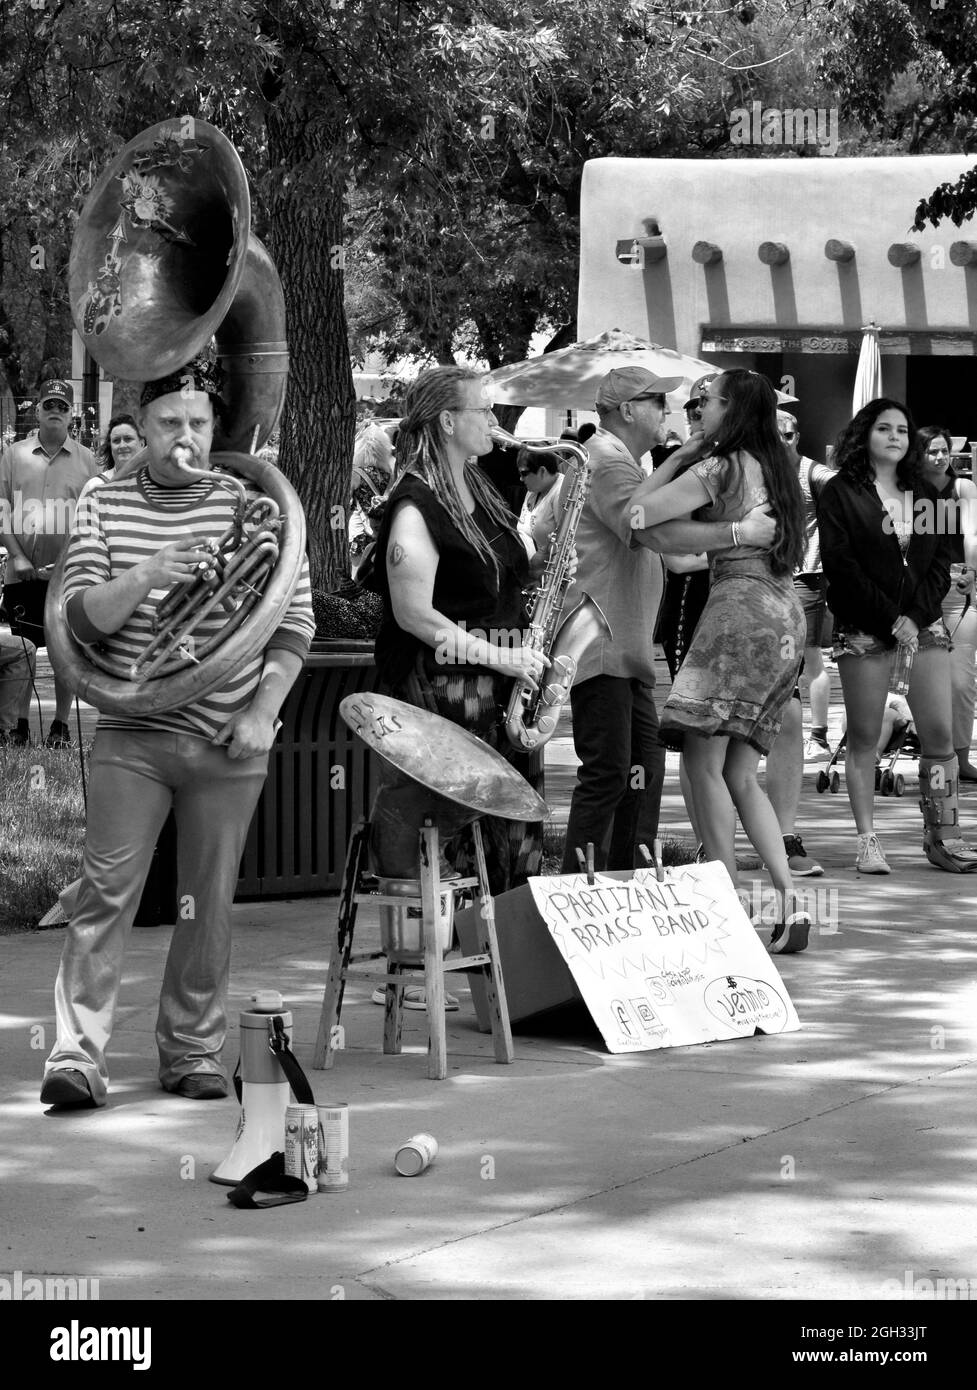 Eine Band von Musikern spielt auf dem historischen Plaza in Santa Fe, New Mexico, um Tipps. Stockfoto